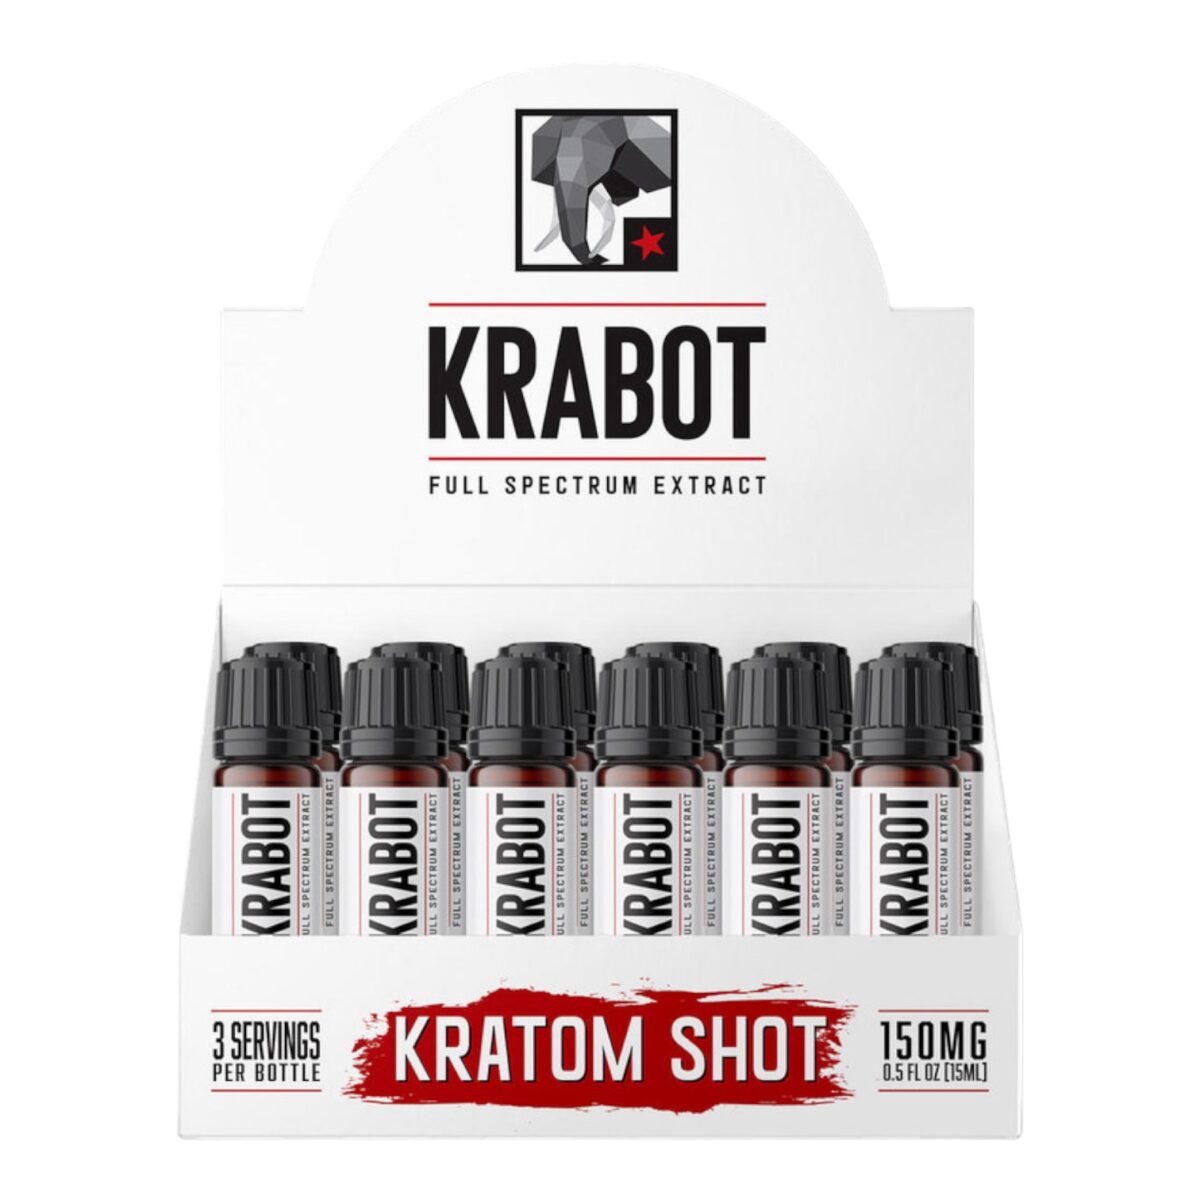 Krabot Blue Raspberry 150MG Kratom Shot – 15ML